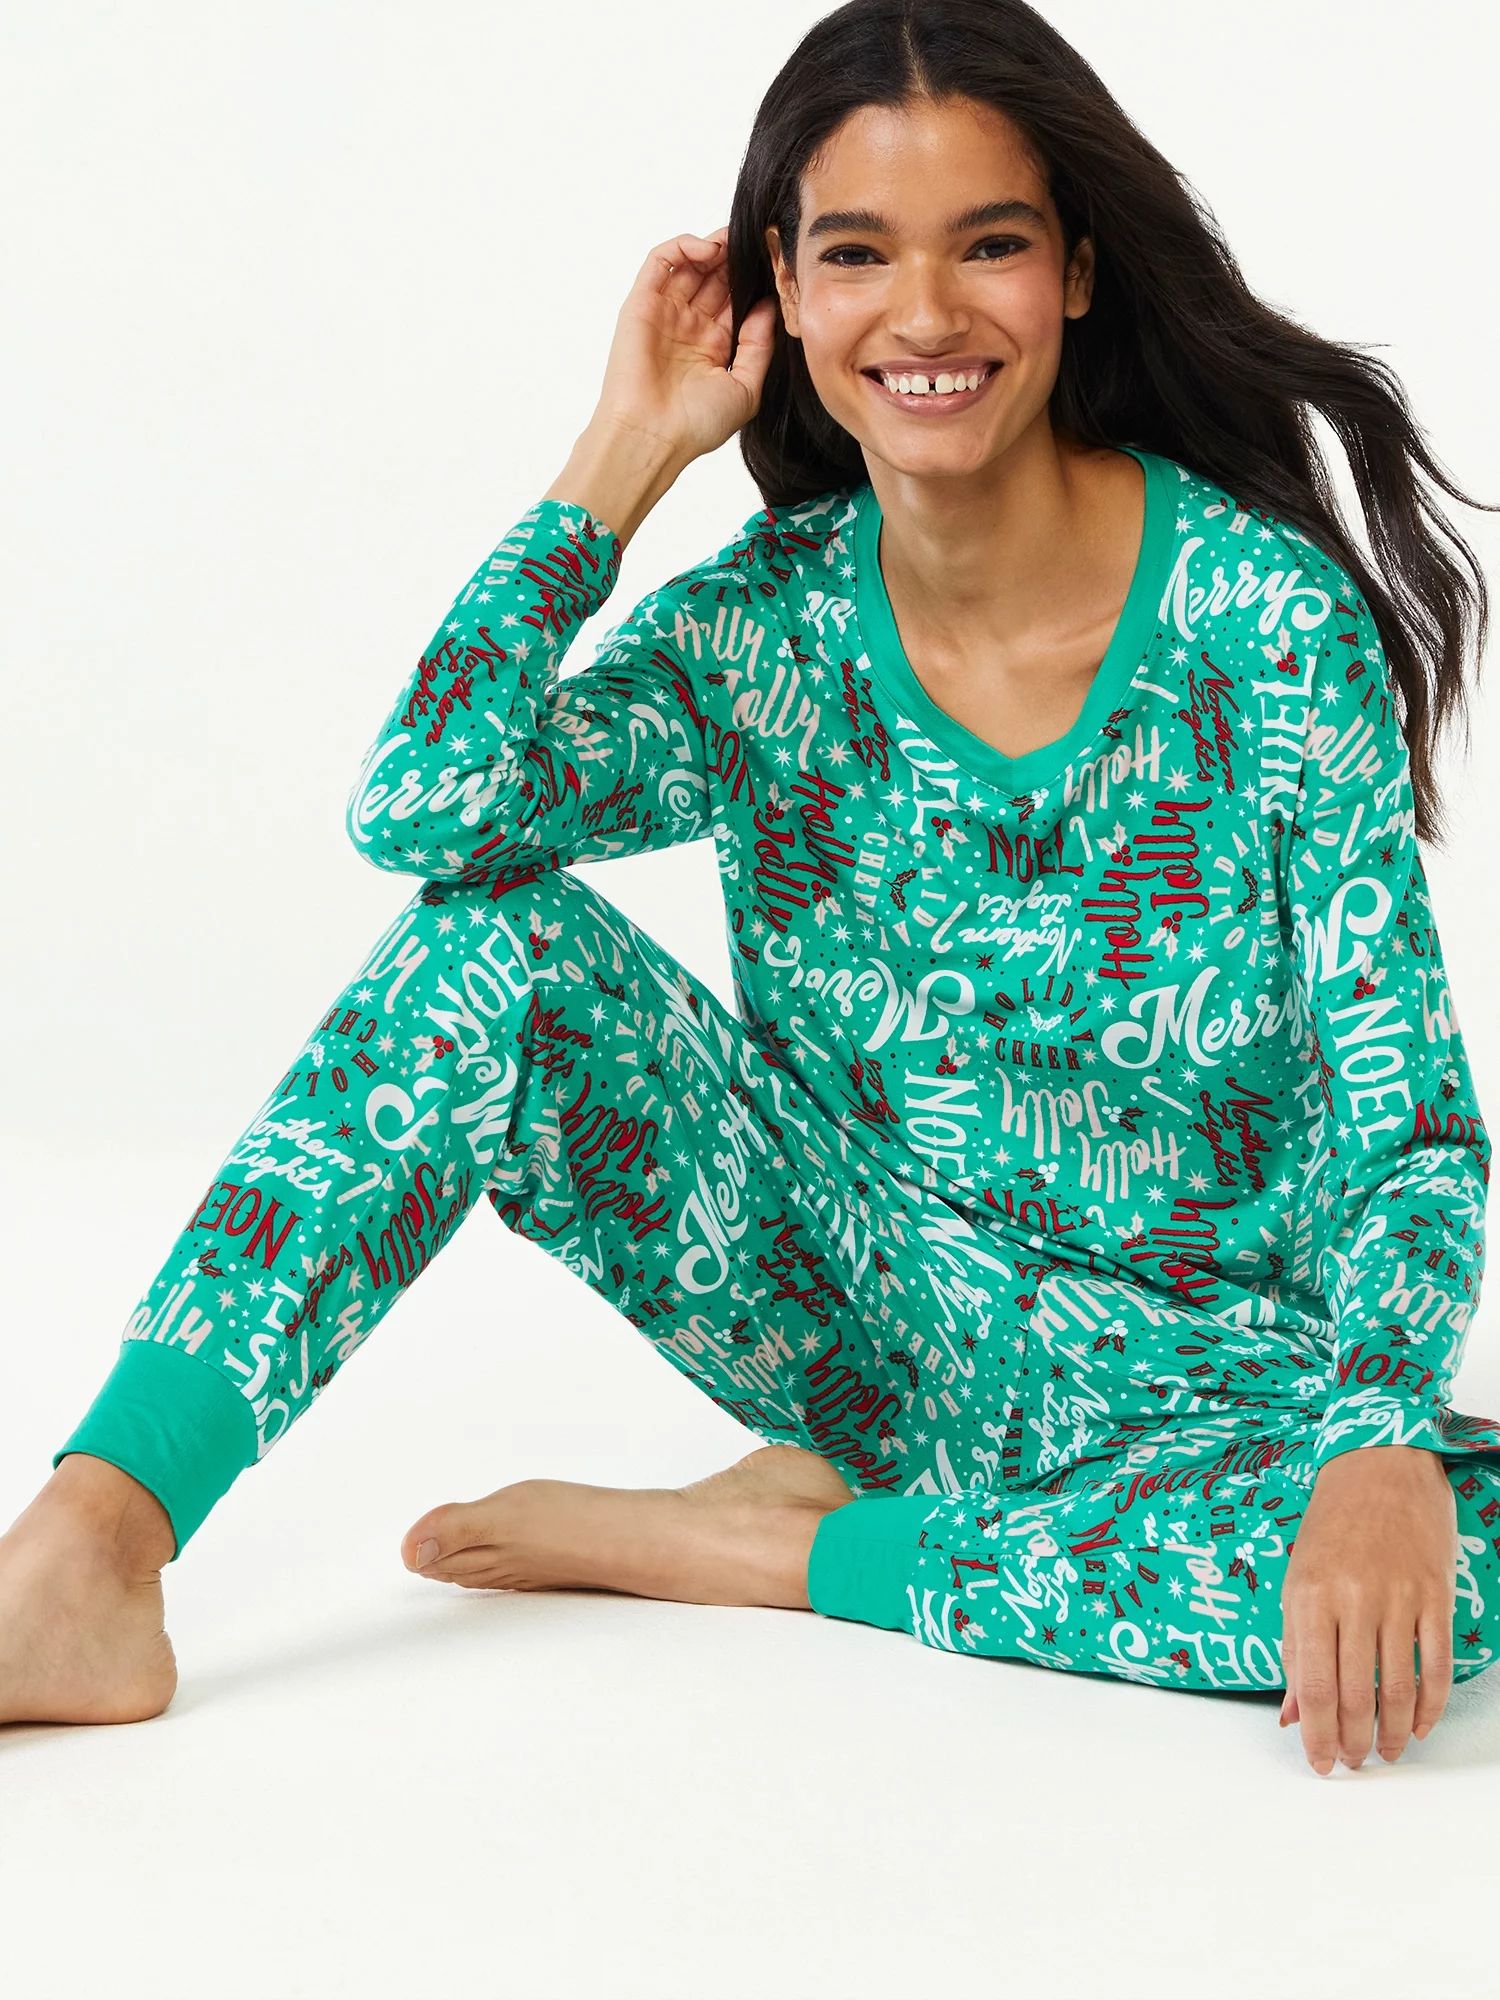 Joyspun Women's Long Sleeve Sleep Top and Jogger PJ Set, 2-Piece, Sizes up to 3X - Walmart.com | Walmart (US)